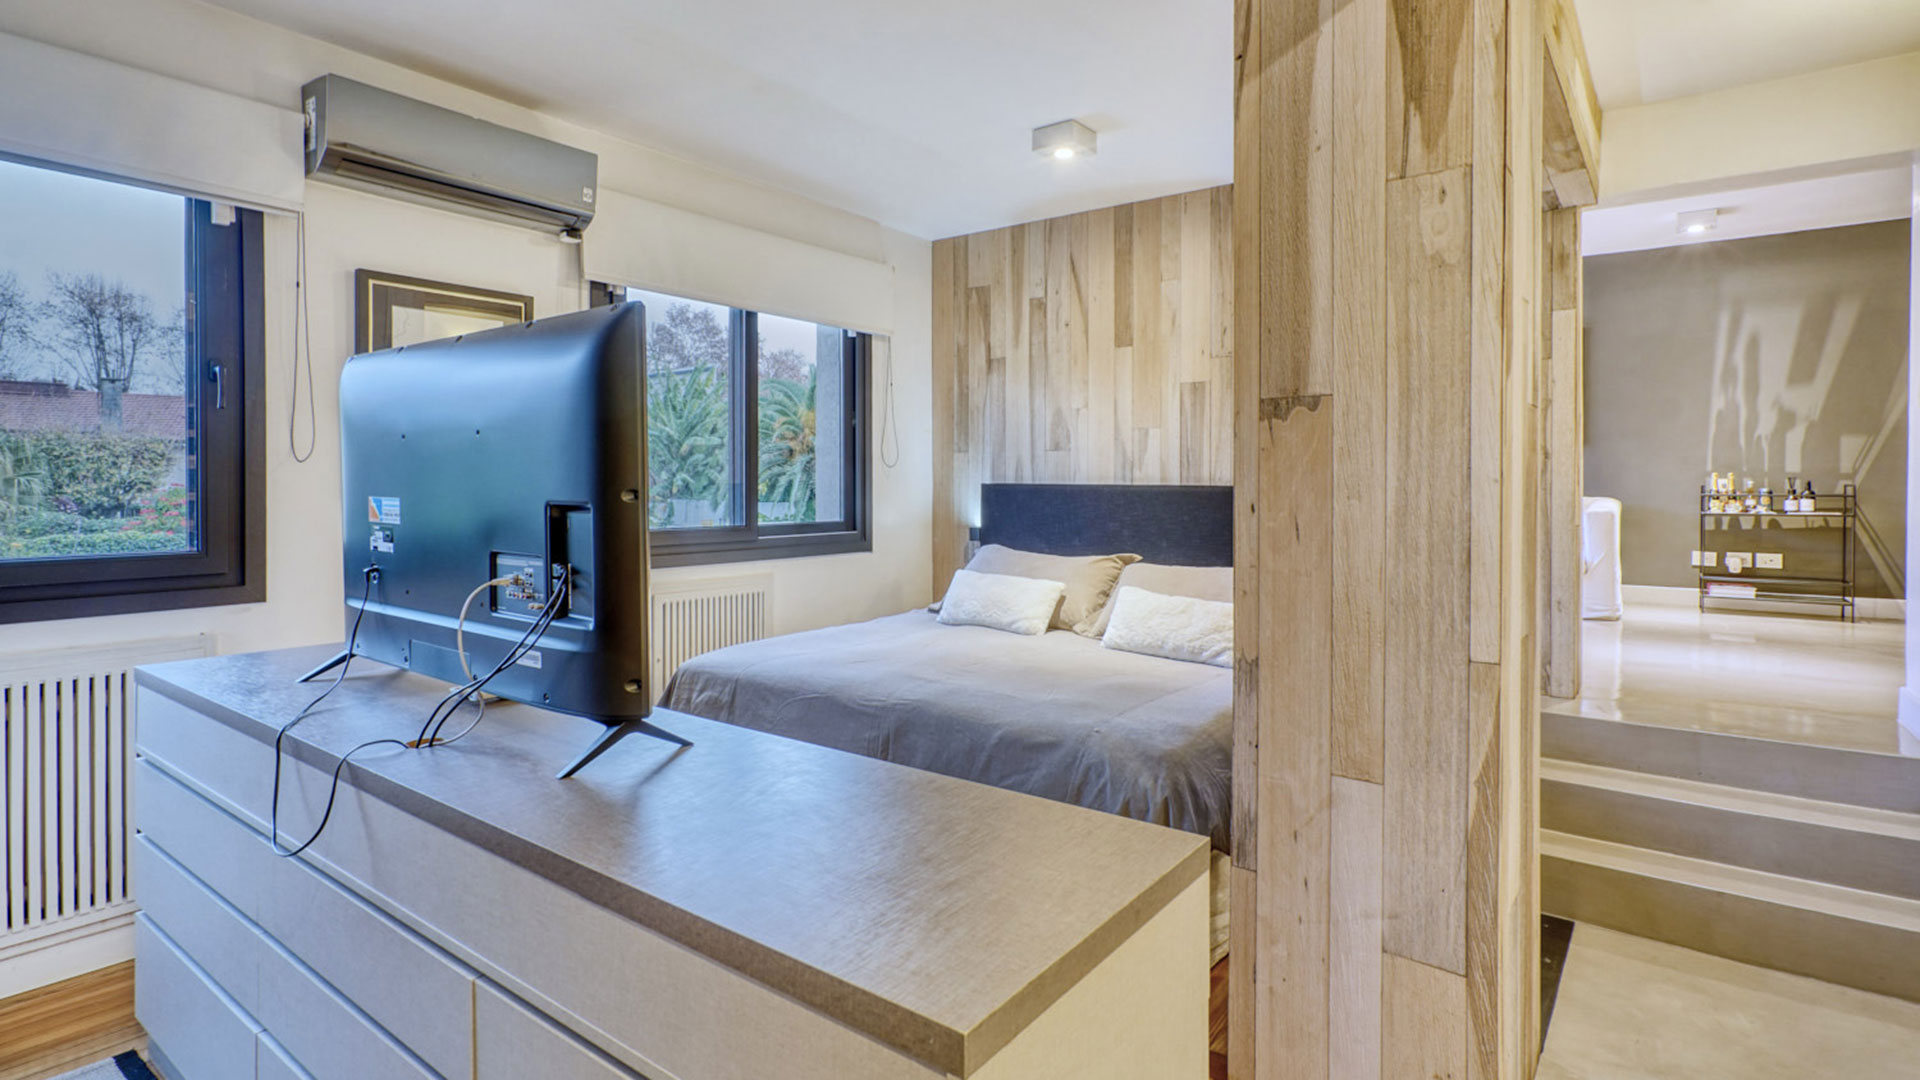 Uno de los dormitorios con pisos de pinotea y mucha madera en sus terminaciones